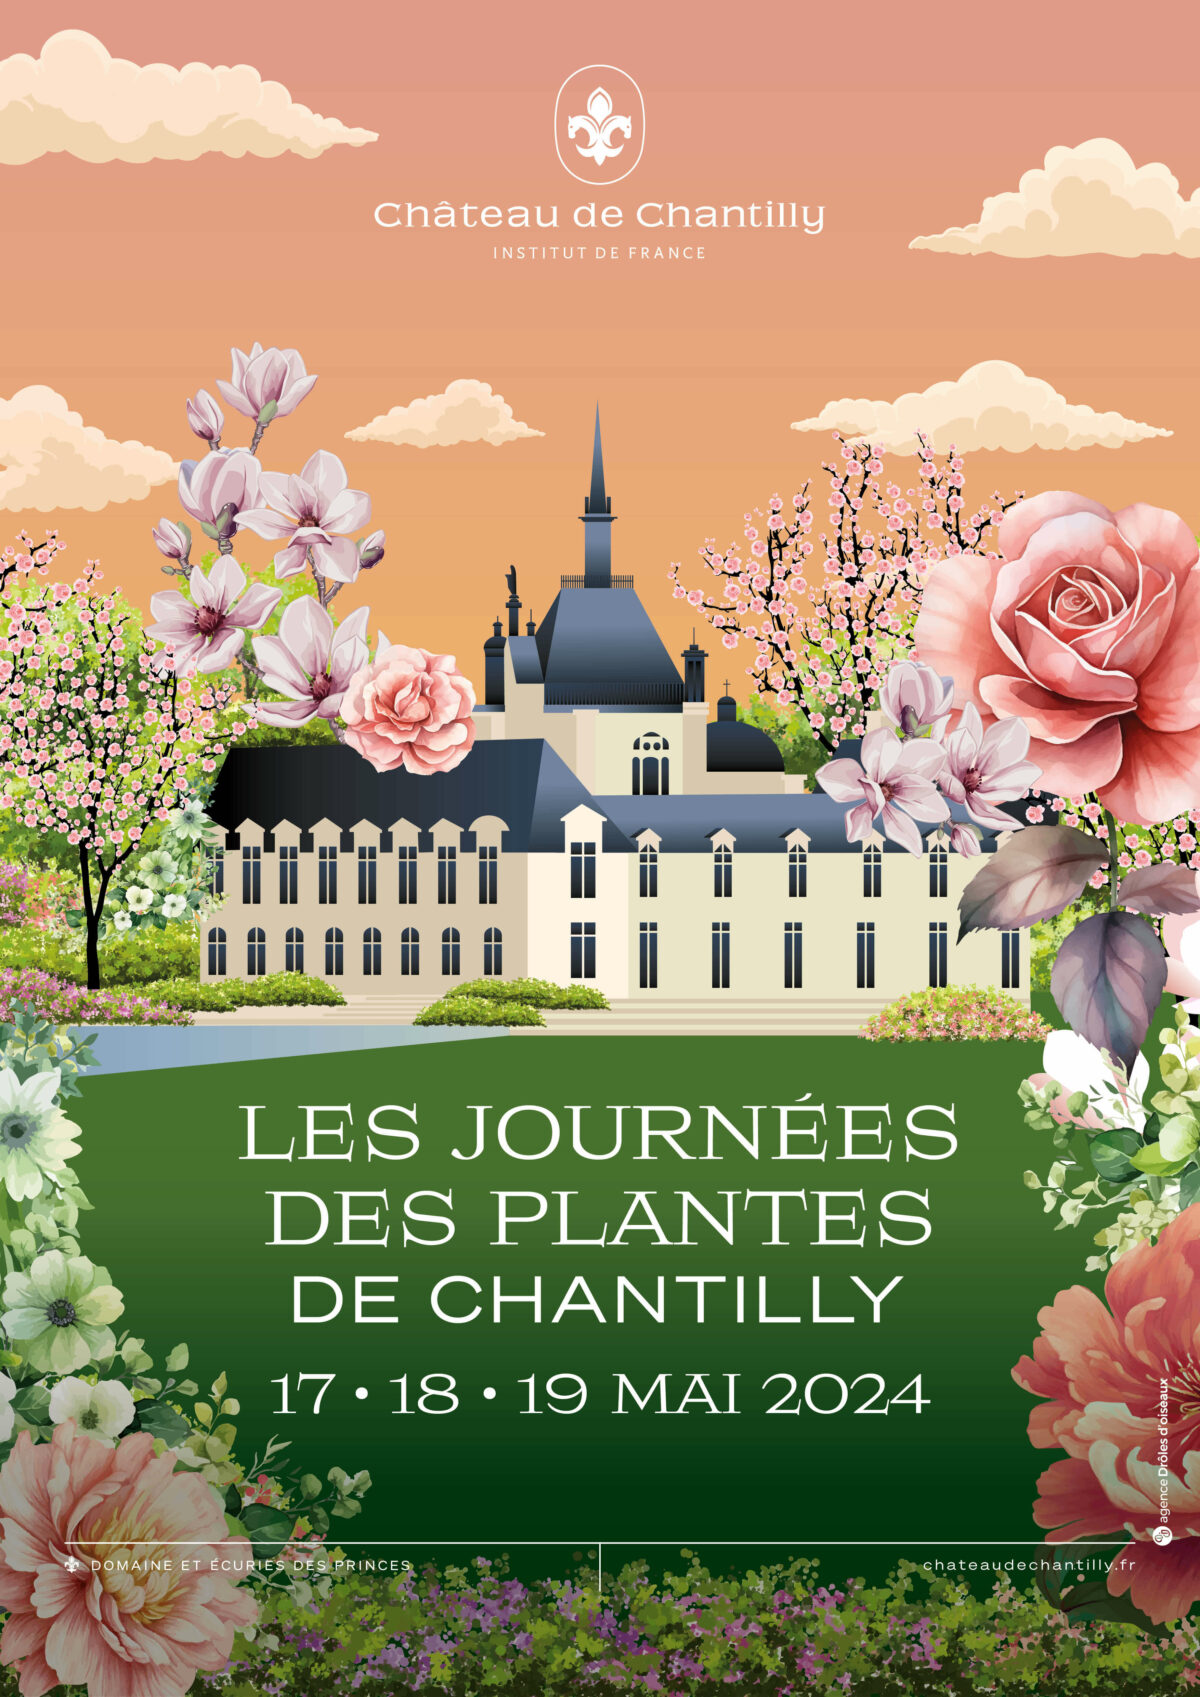 Château de Chantilly Journées des Plantes du 17 au 19 mai 2024